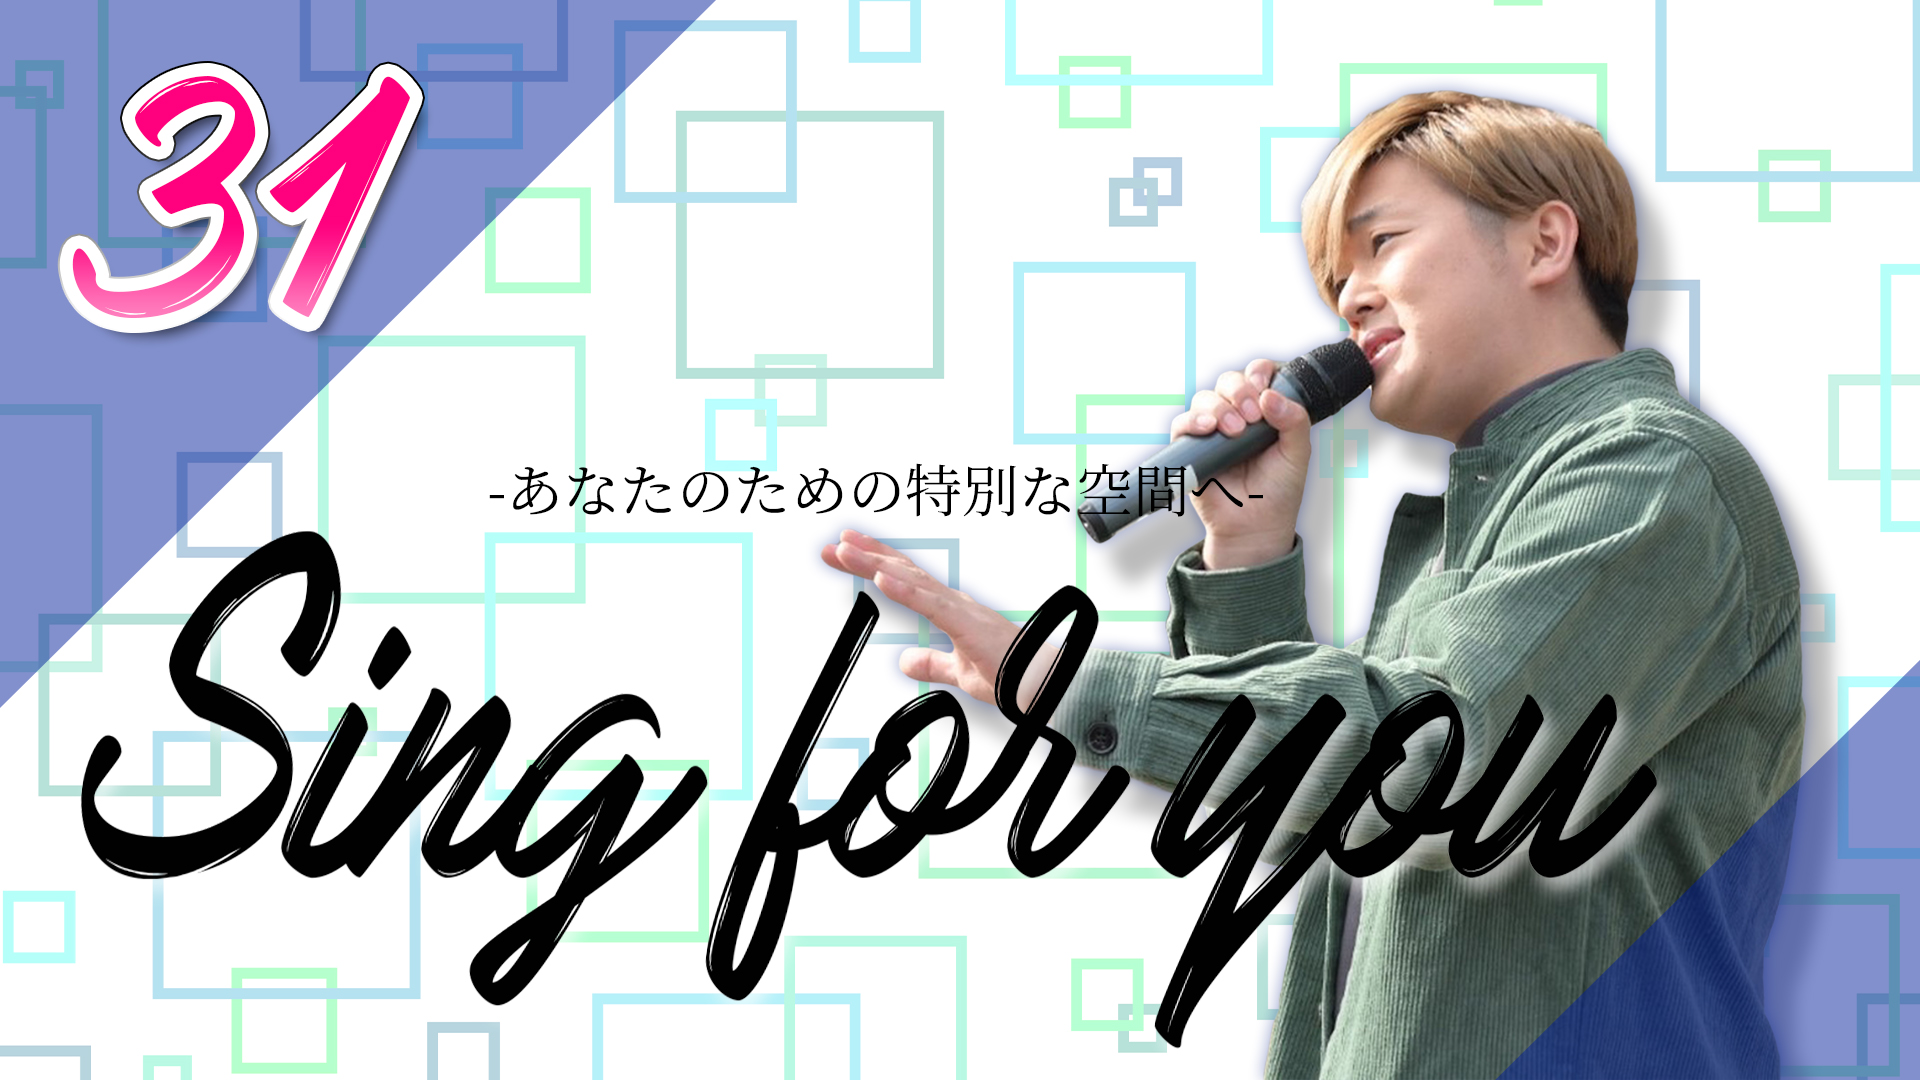 【太田克樹】1/22 (土)マンツーマンライブ「Sing for you vol.31」